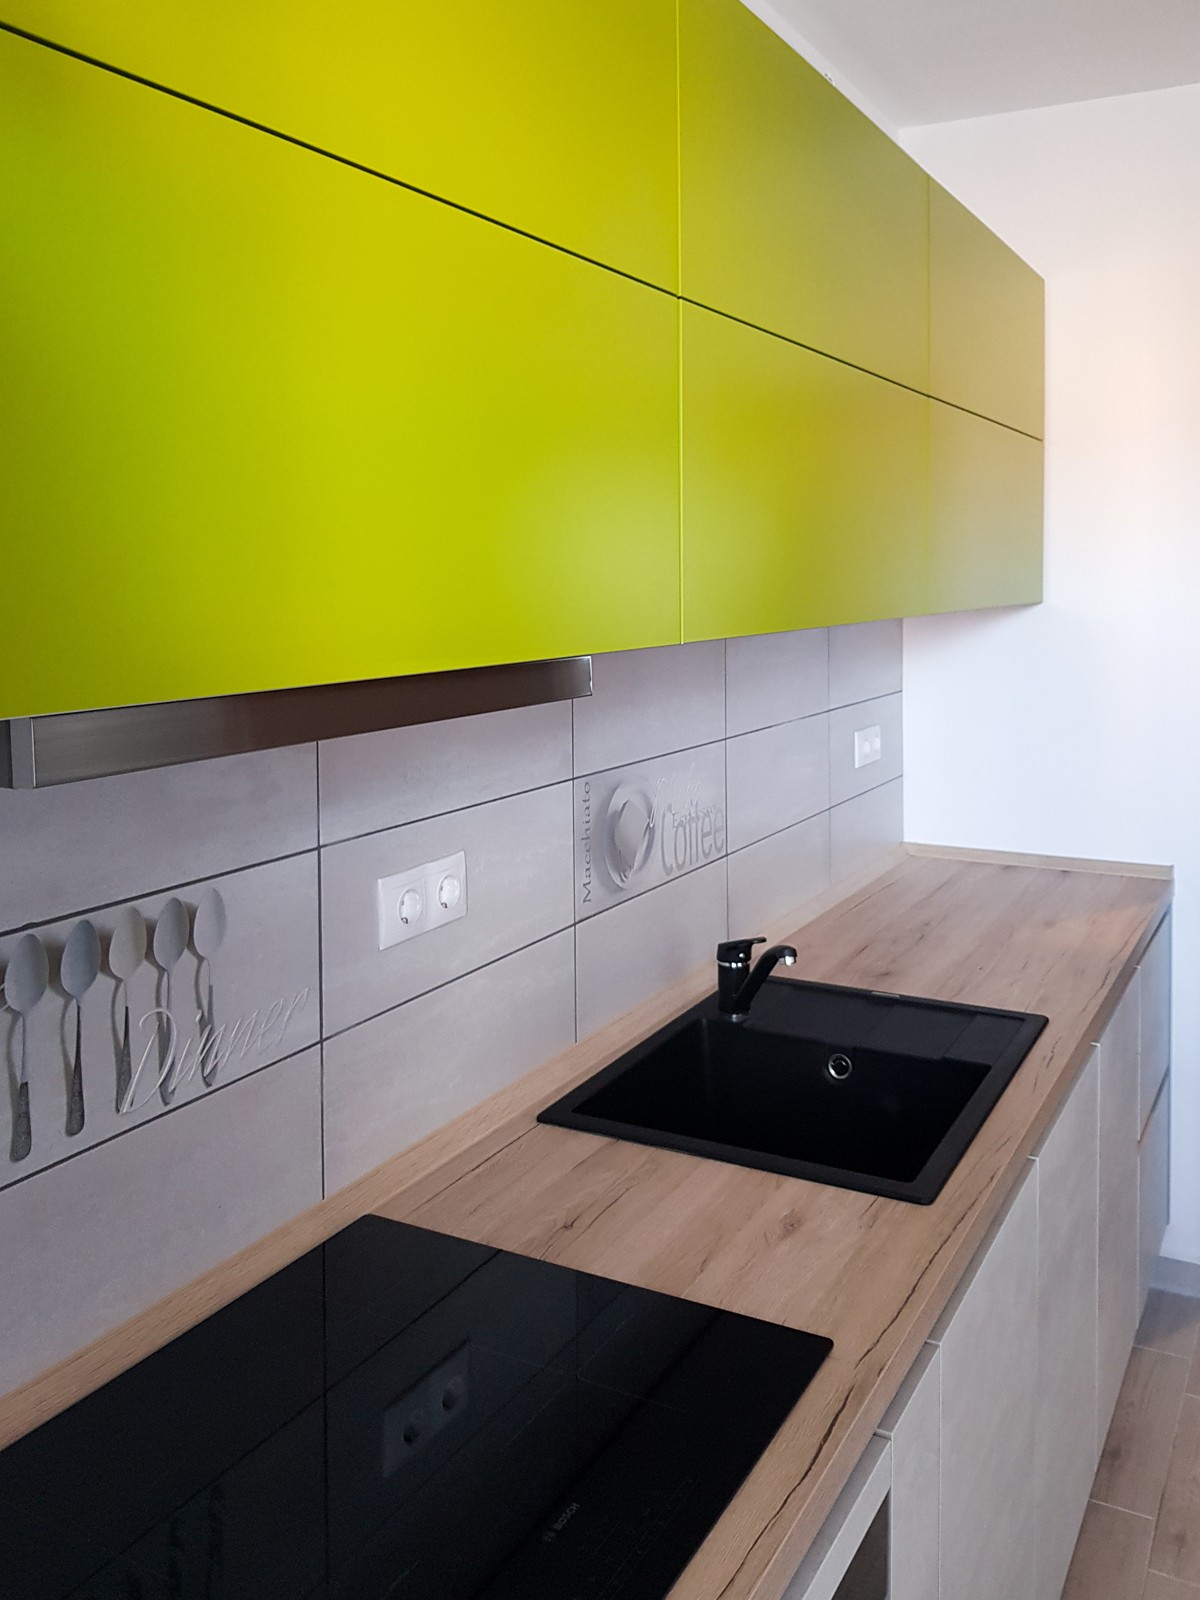 Referință - Bucătărie modernă Kuechentreff Riva - Beton alb / Verde ferigă 